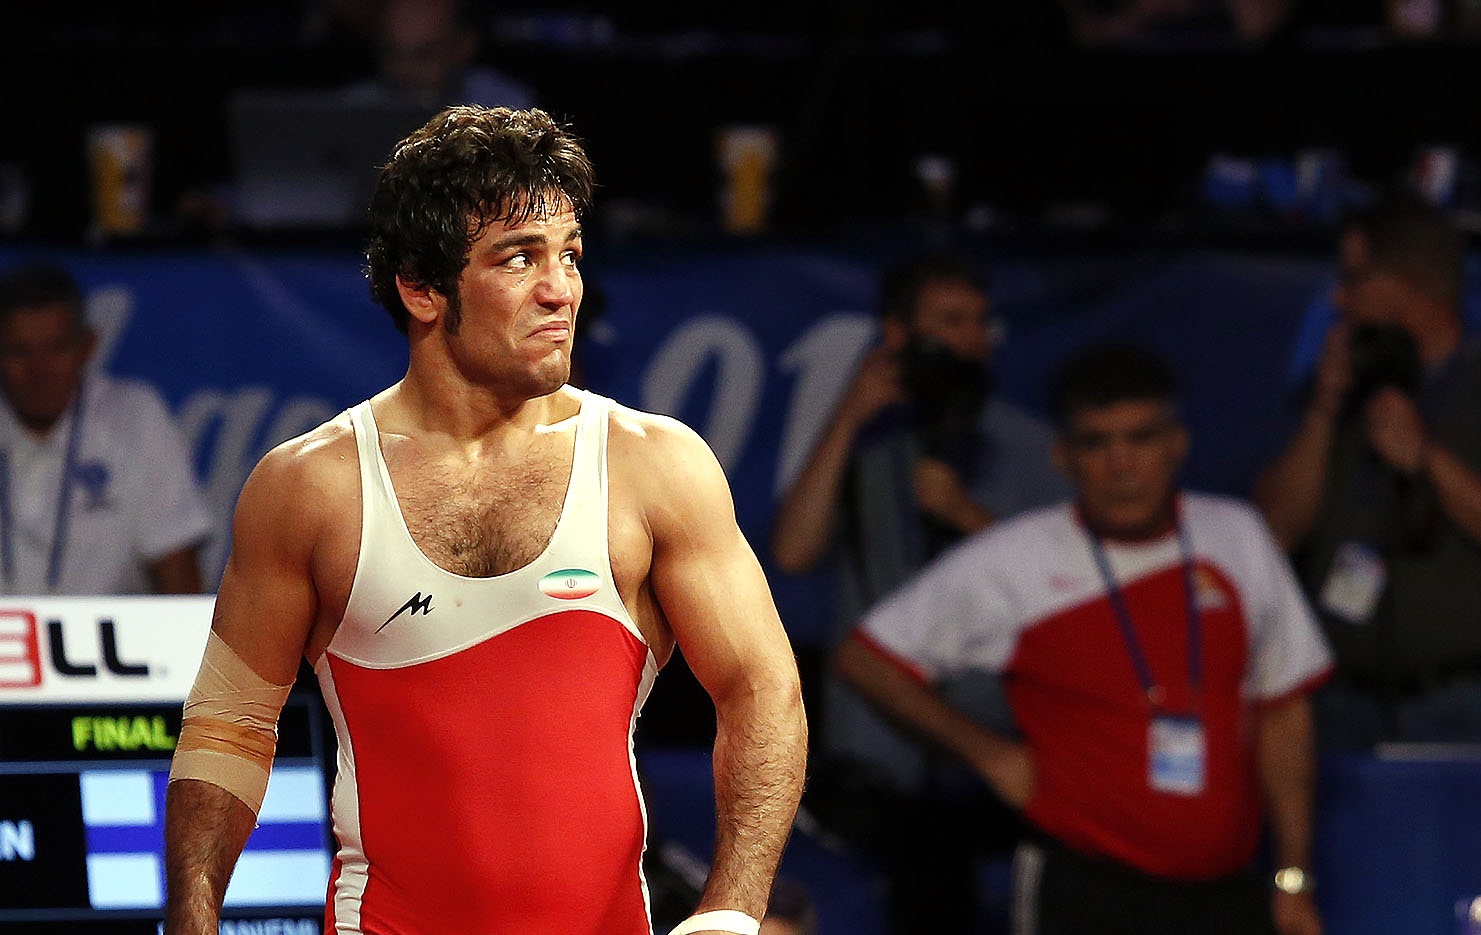 اخلاقی نماینده وزن 85 کیلوگرم کشتی فرنگی ایران در المپیک ریو شد